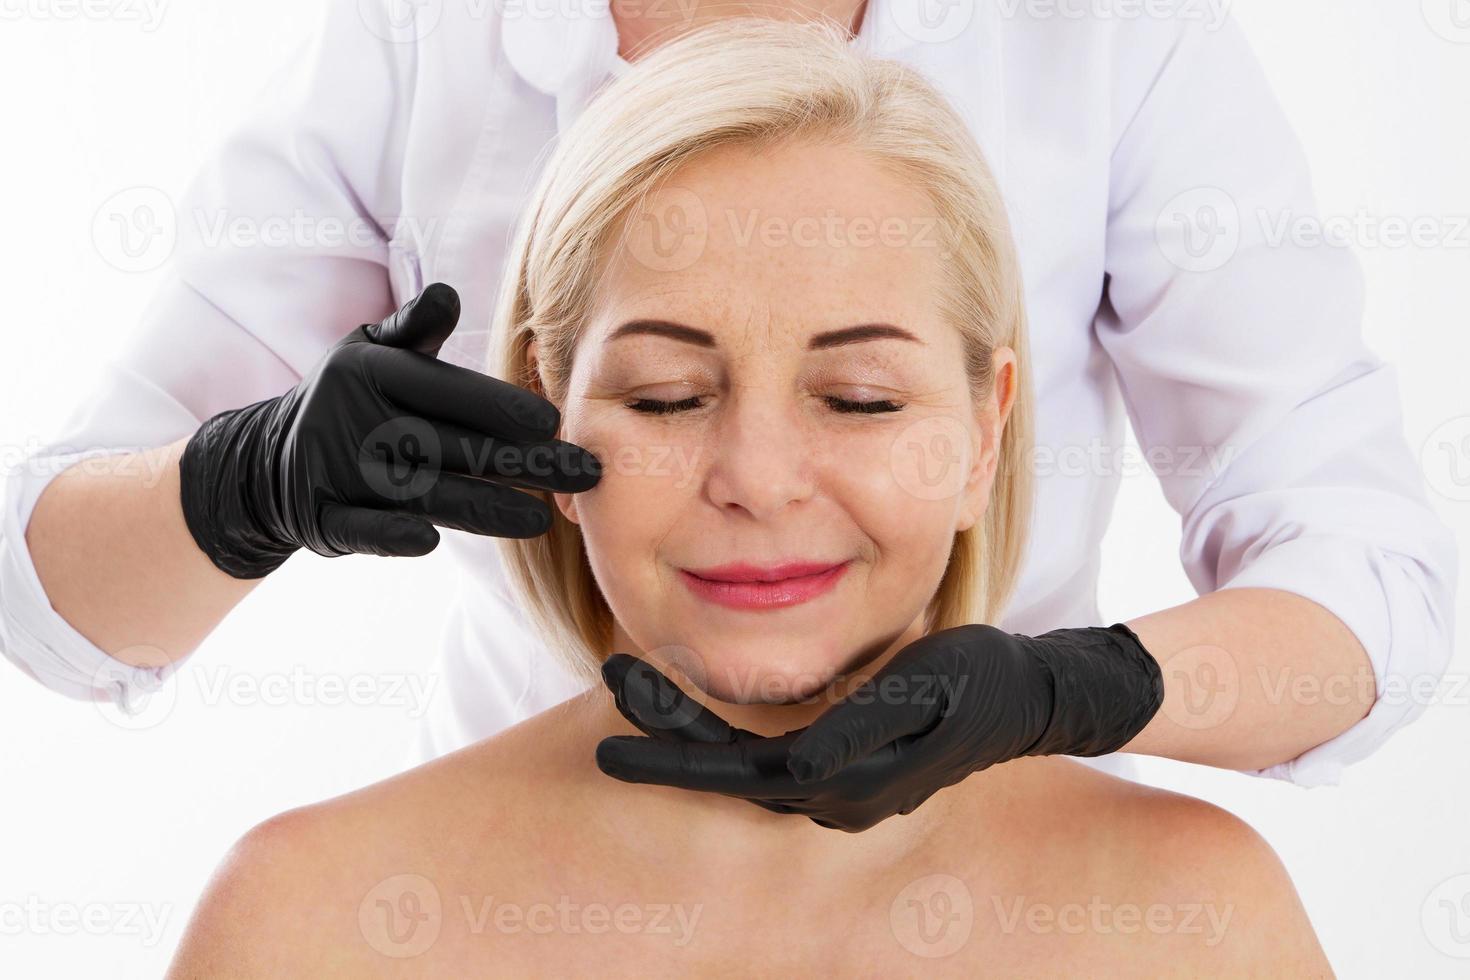 kosmetolog undersöker en kvinnas ansikte med åldersrynkor - åldrande och hudvårdskoncept foto